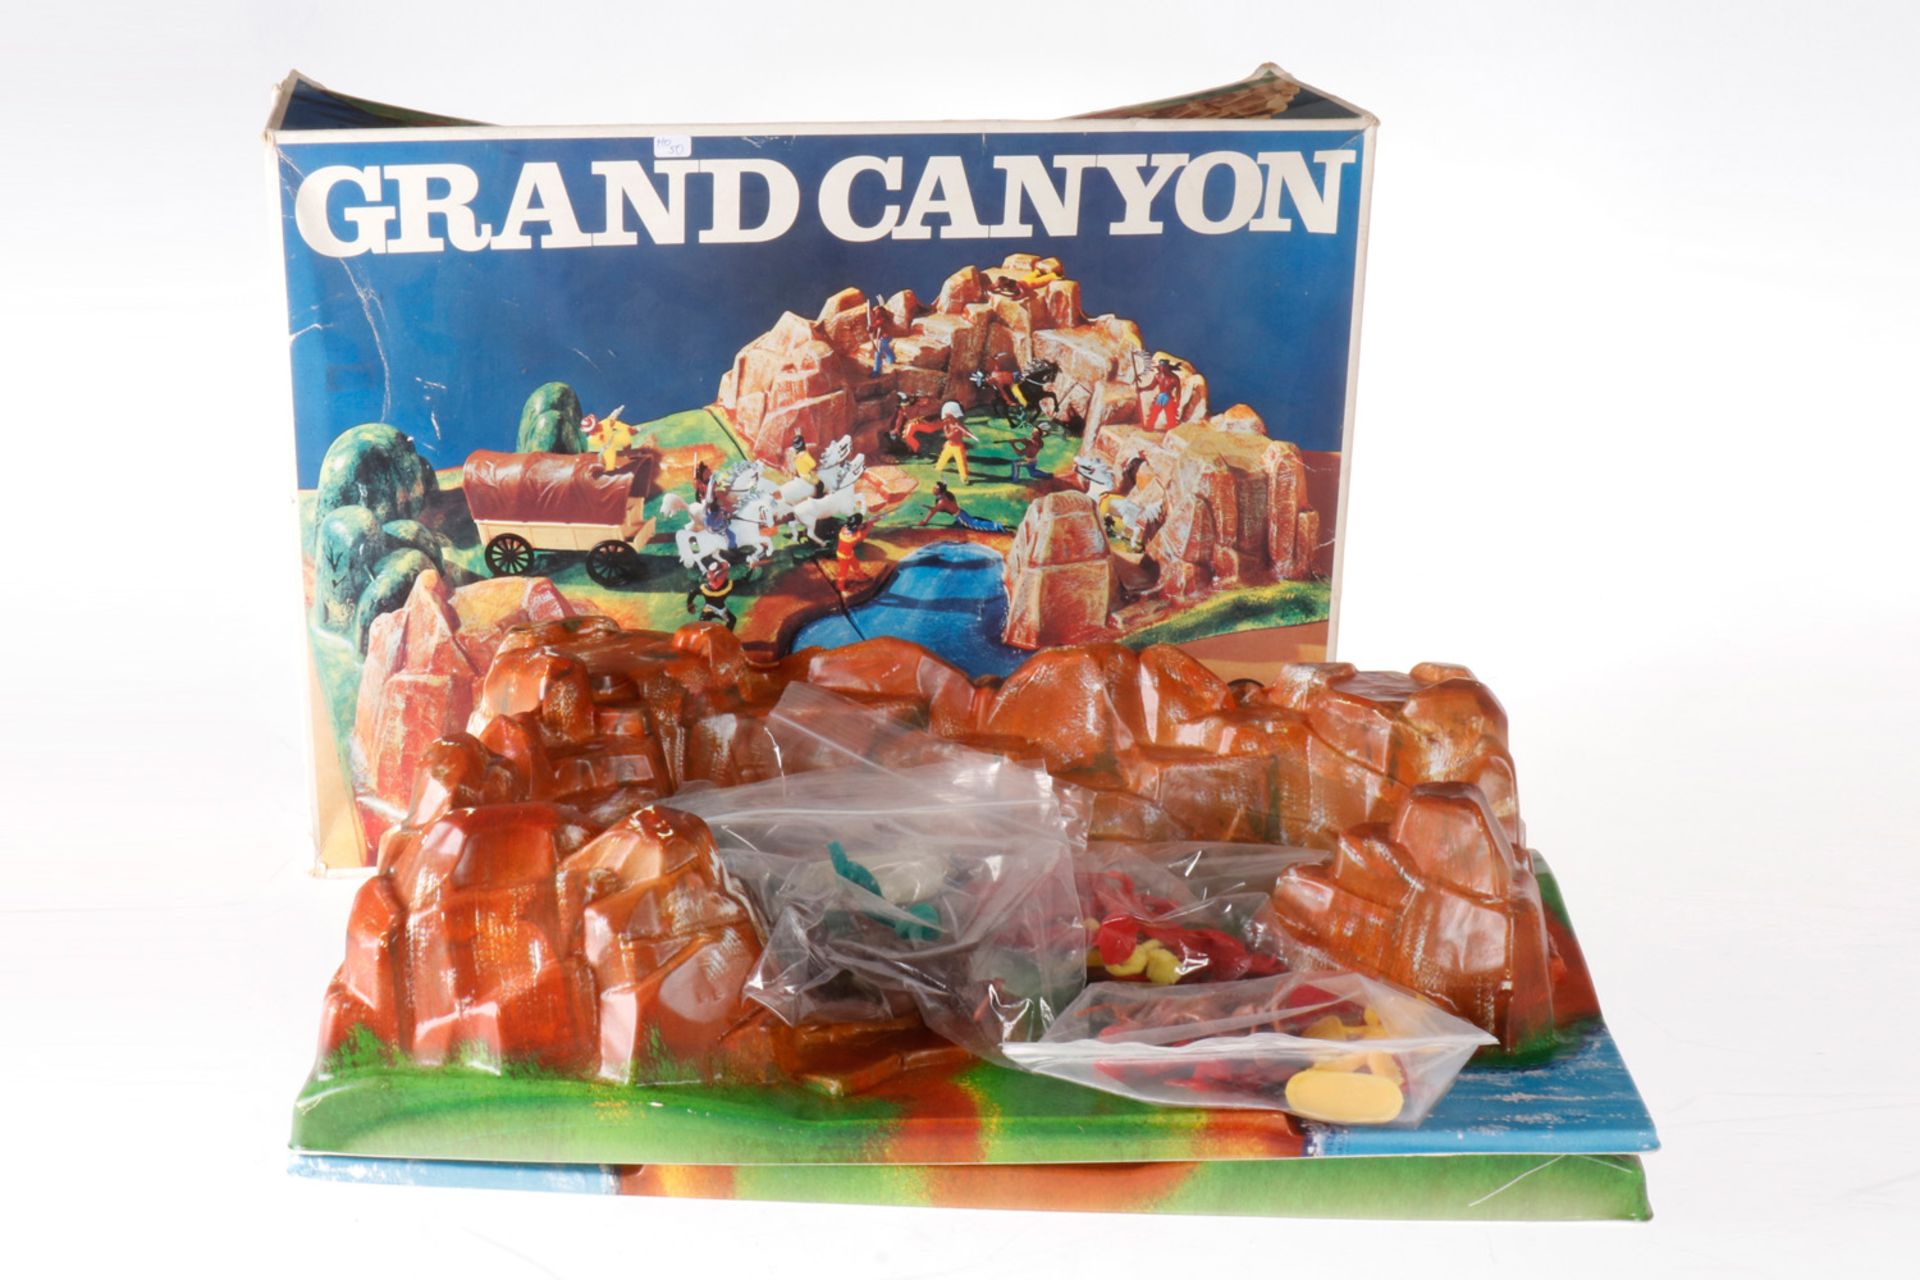 Höfler Western-Szene "Grand Canyon" 555, Kunststoff, 2-teilig, mit Figuren und Pferden, Planewagen